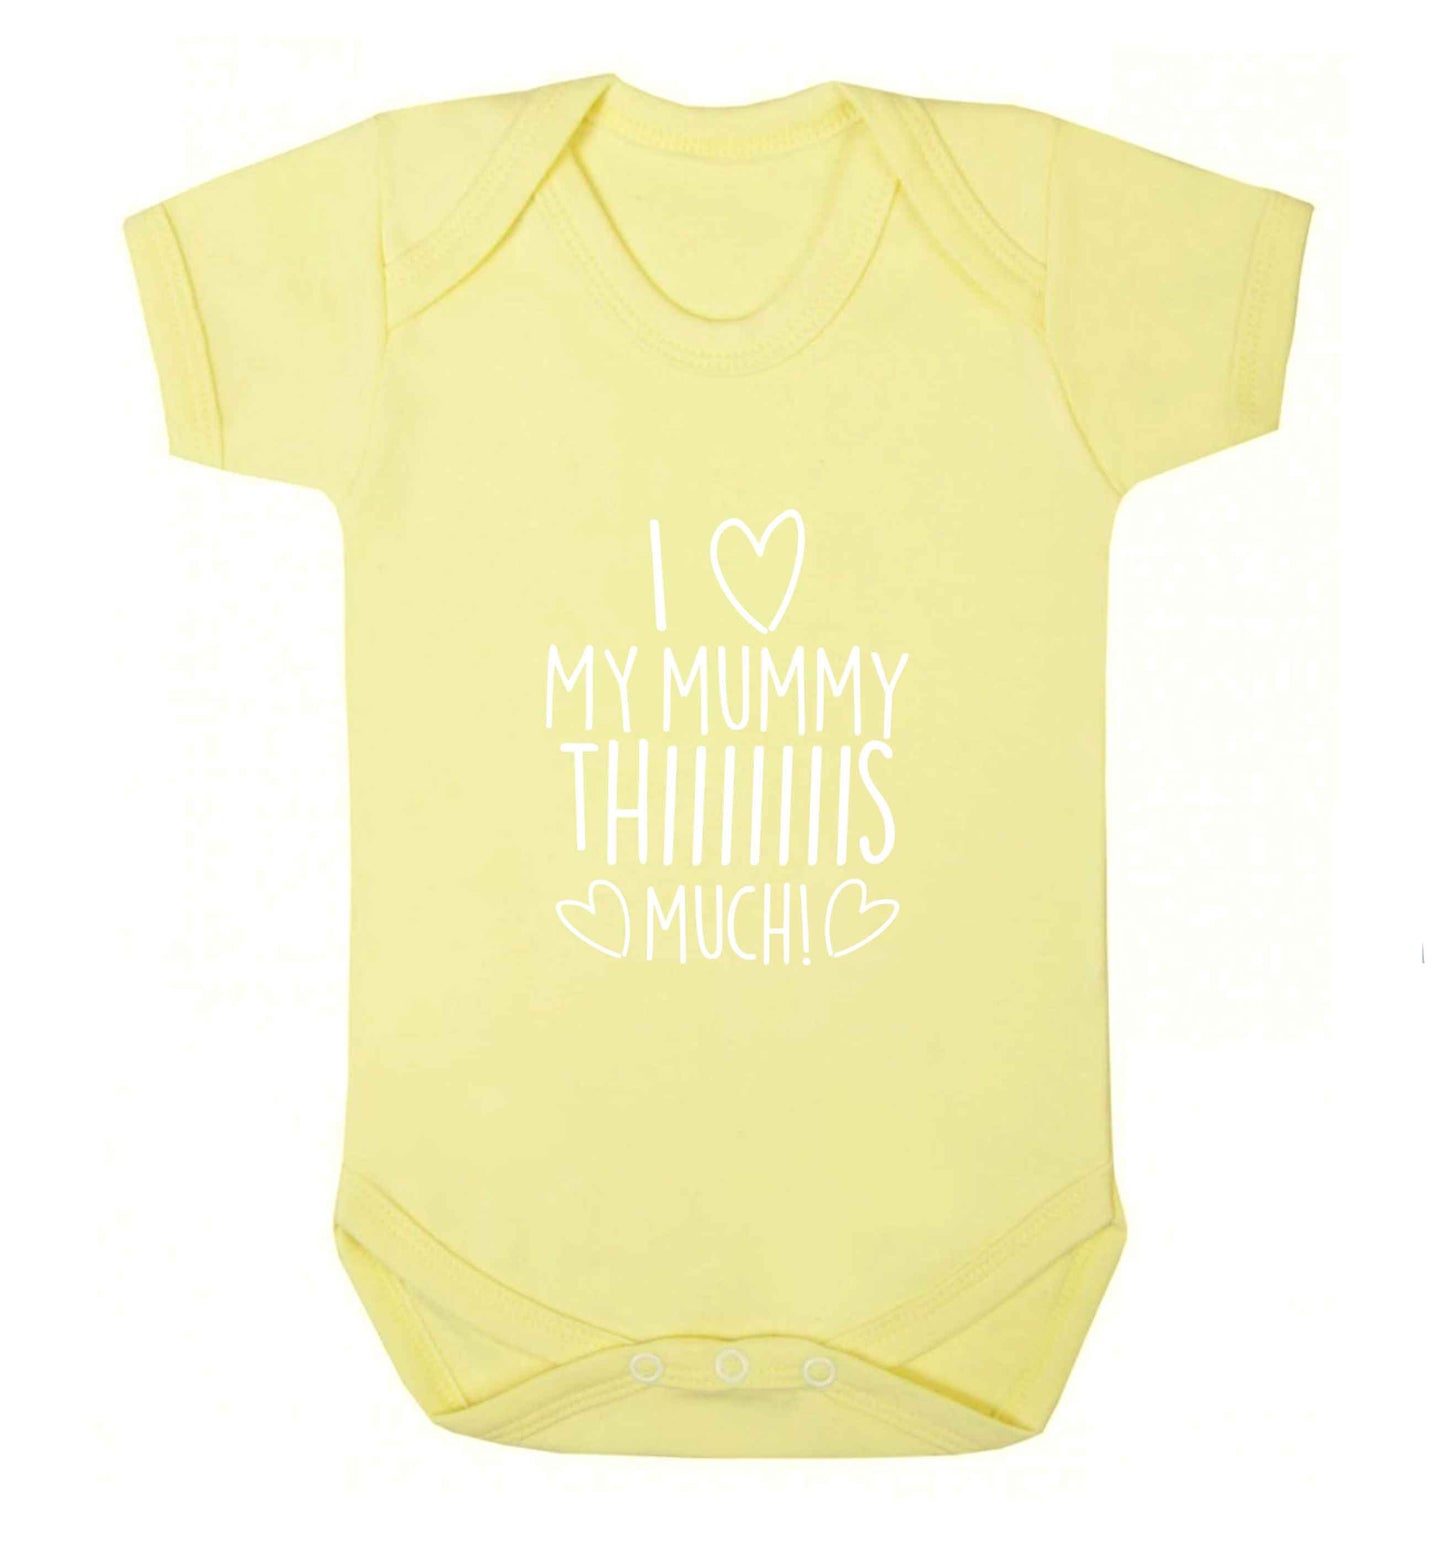 I love my mummy thiiiiis much! baby vest pale yellow 18-24 months